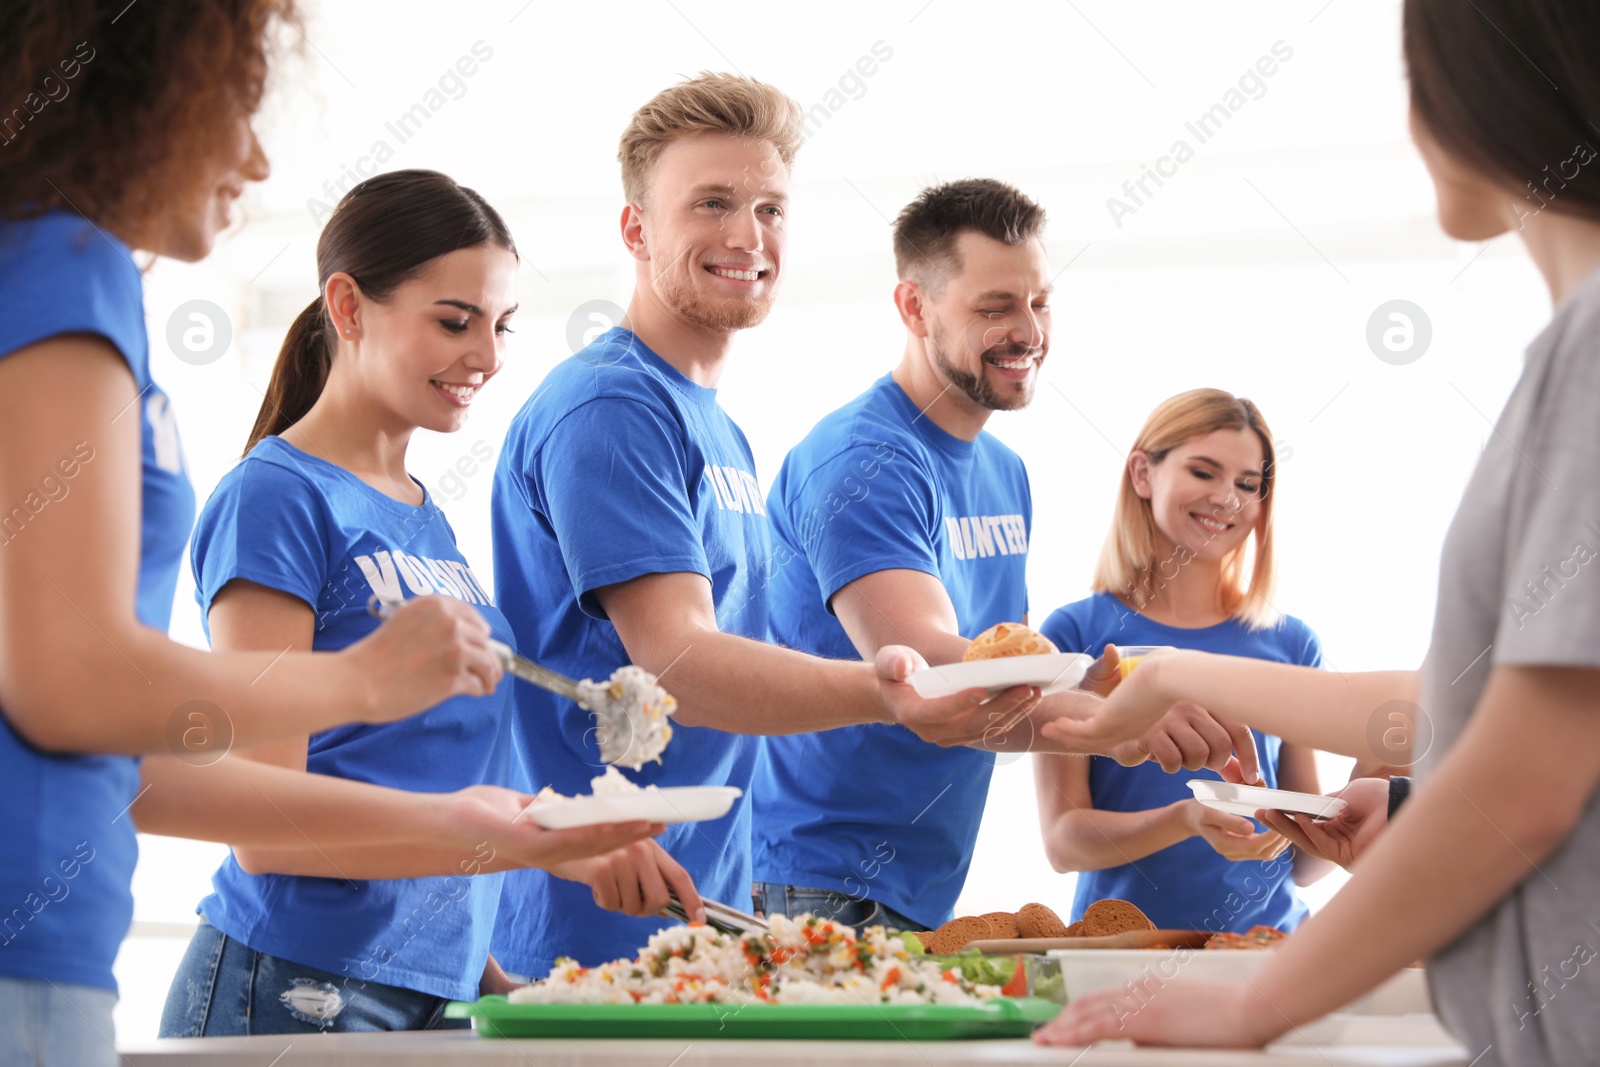 Photo of Volunteers serving food to poor people indoors